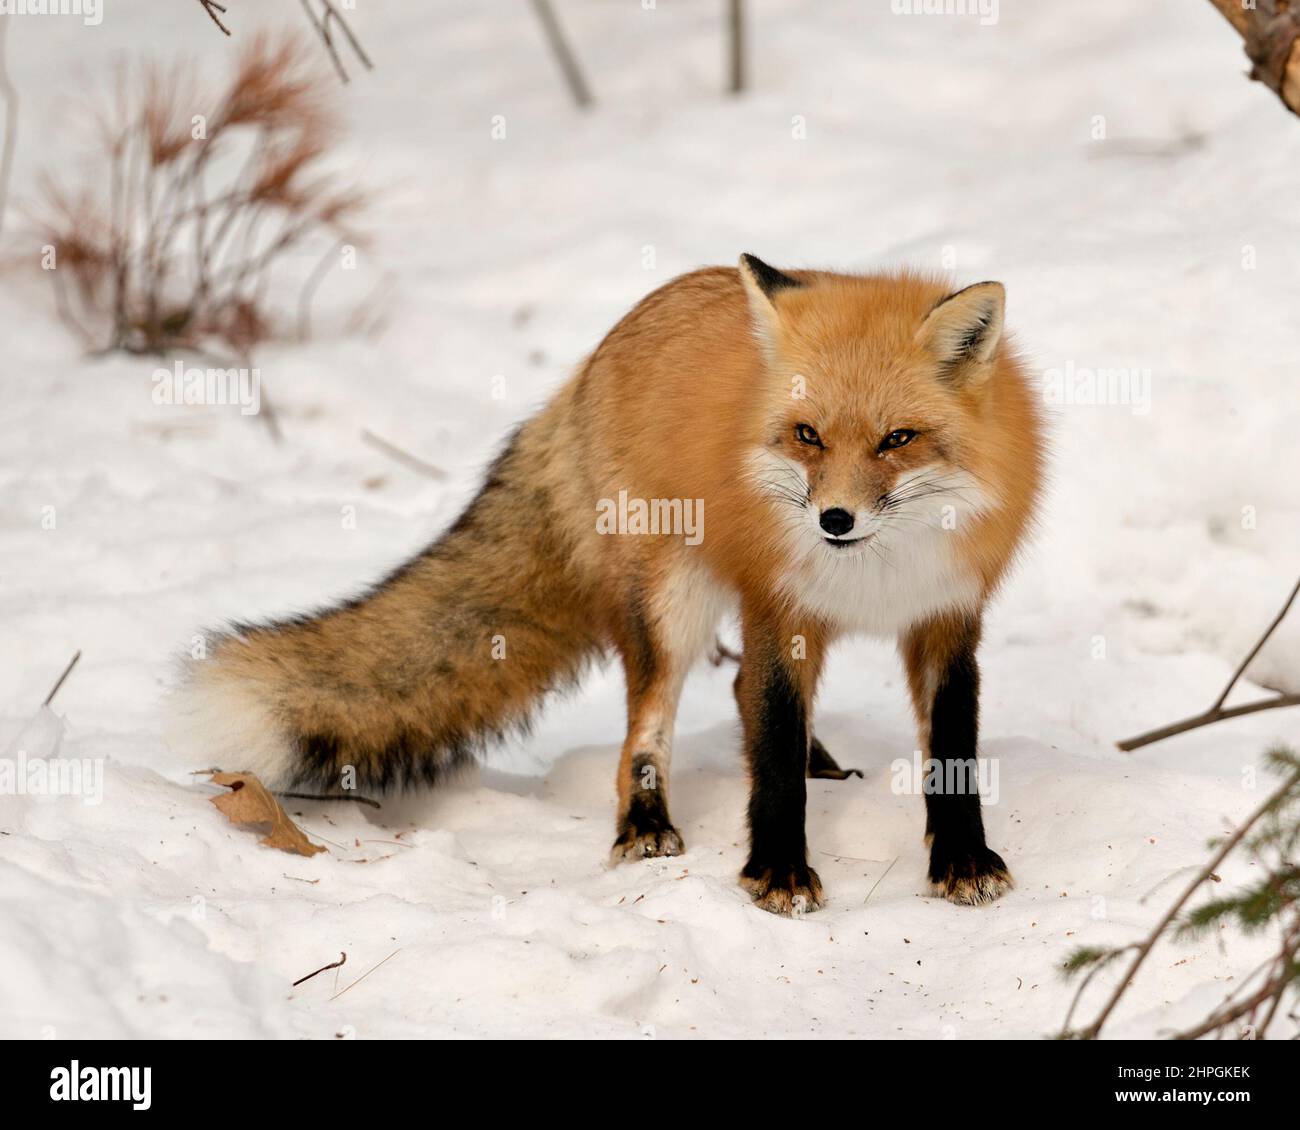 Vista ravvicinata del profilo della volpe rossa nella stagione invernale nel suo ambiente e habitat con sfondo sfocato di neve che mostra coda di volpe folta, pelliccia. Immagine Fox. Foto Stock